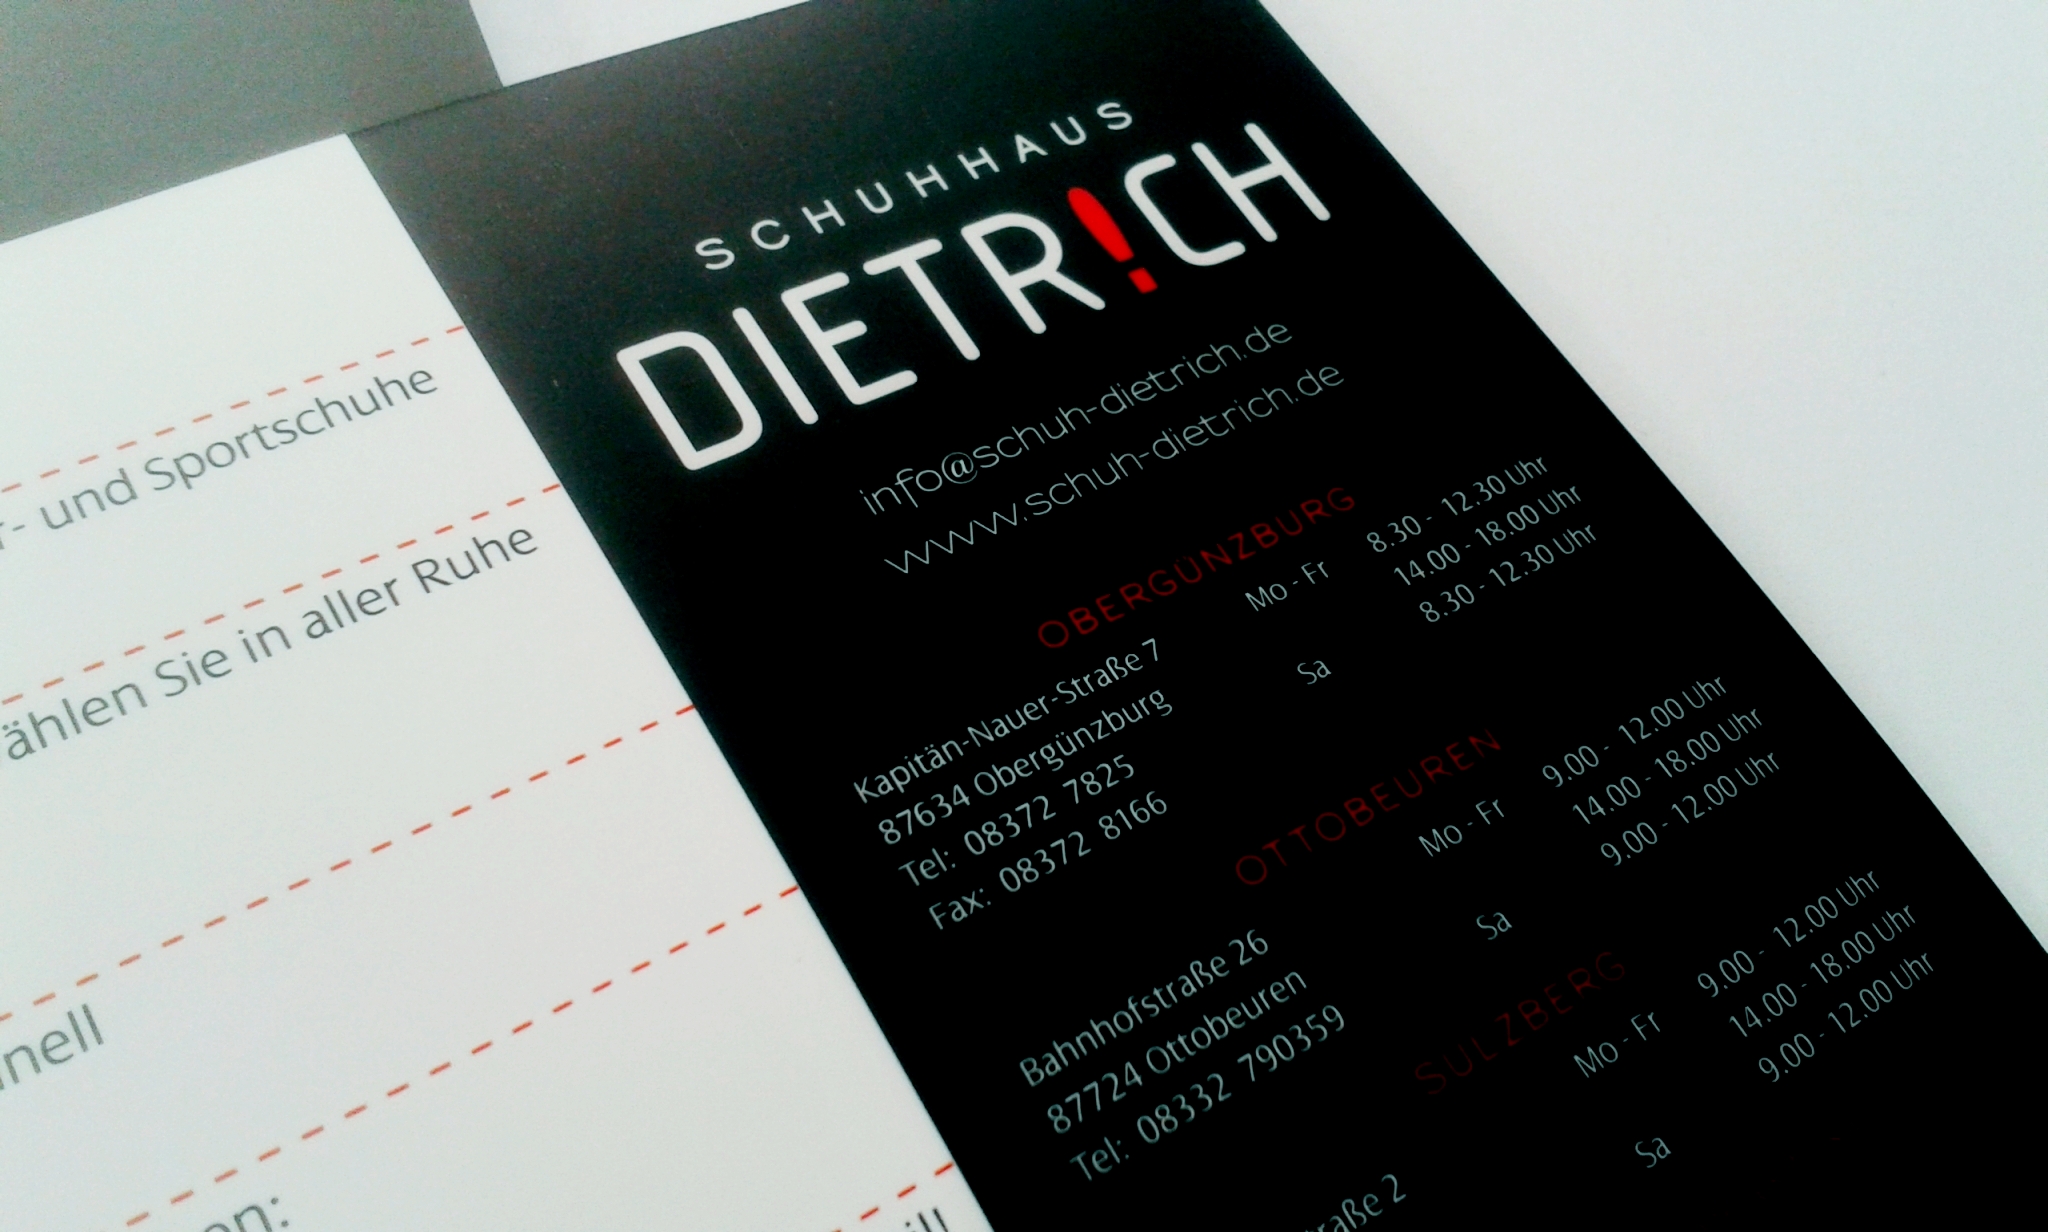 Flyer Schuhhaus Dietrich von der Werbeagentur Denkrausch im Allgäu